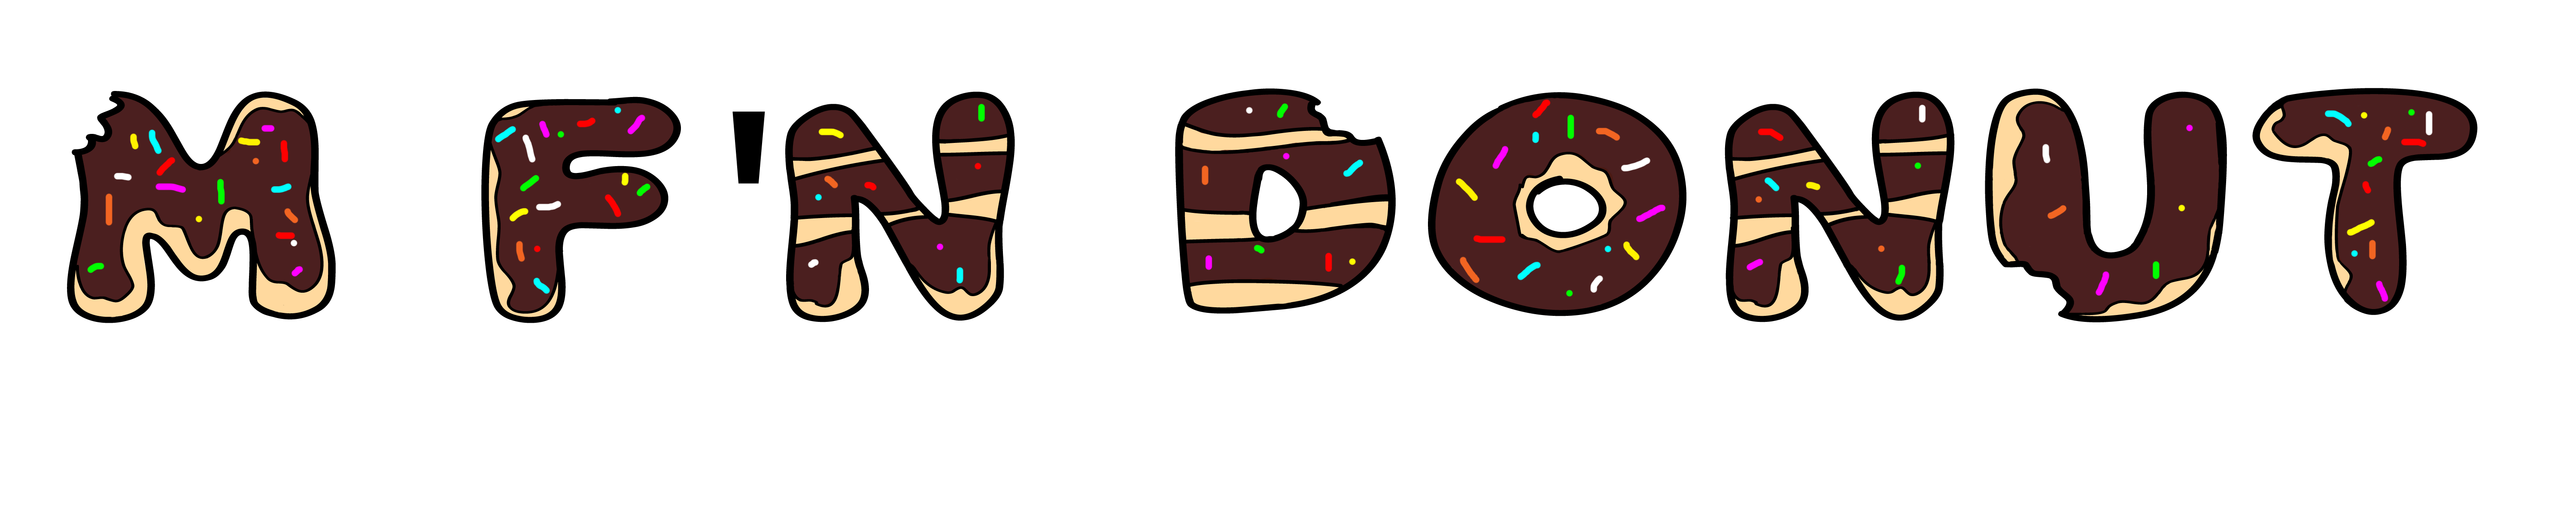 Donuts milk